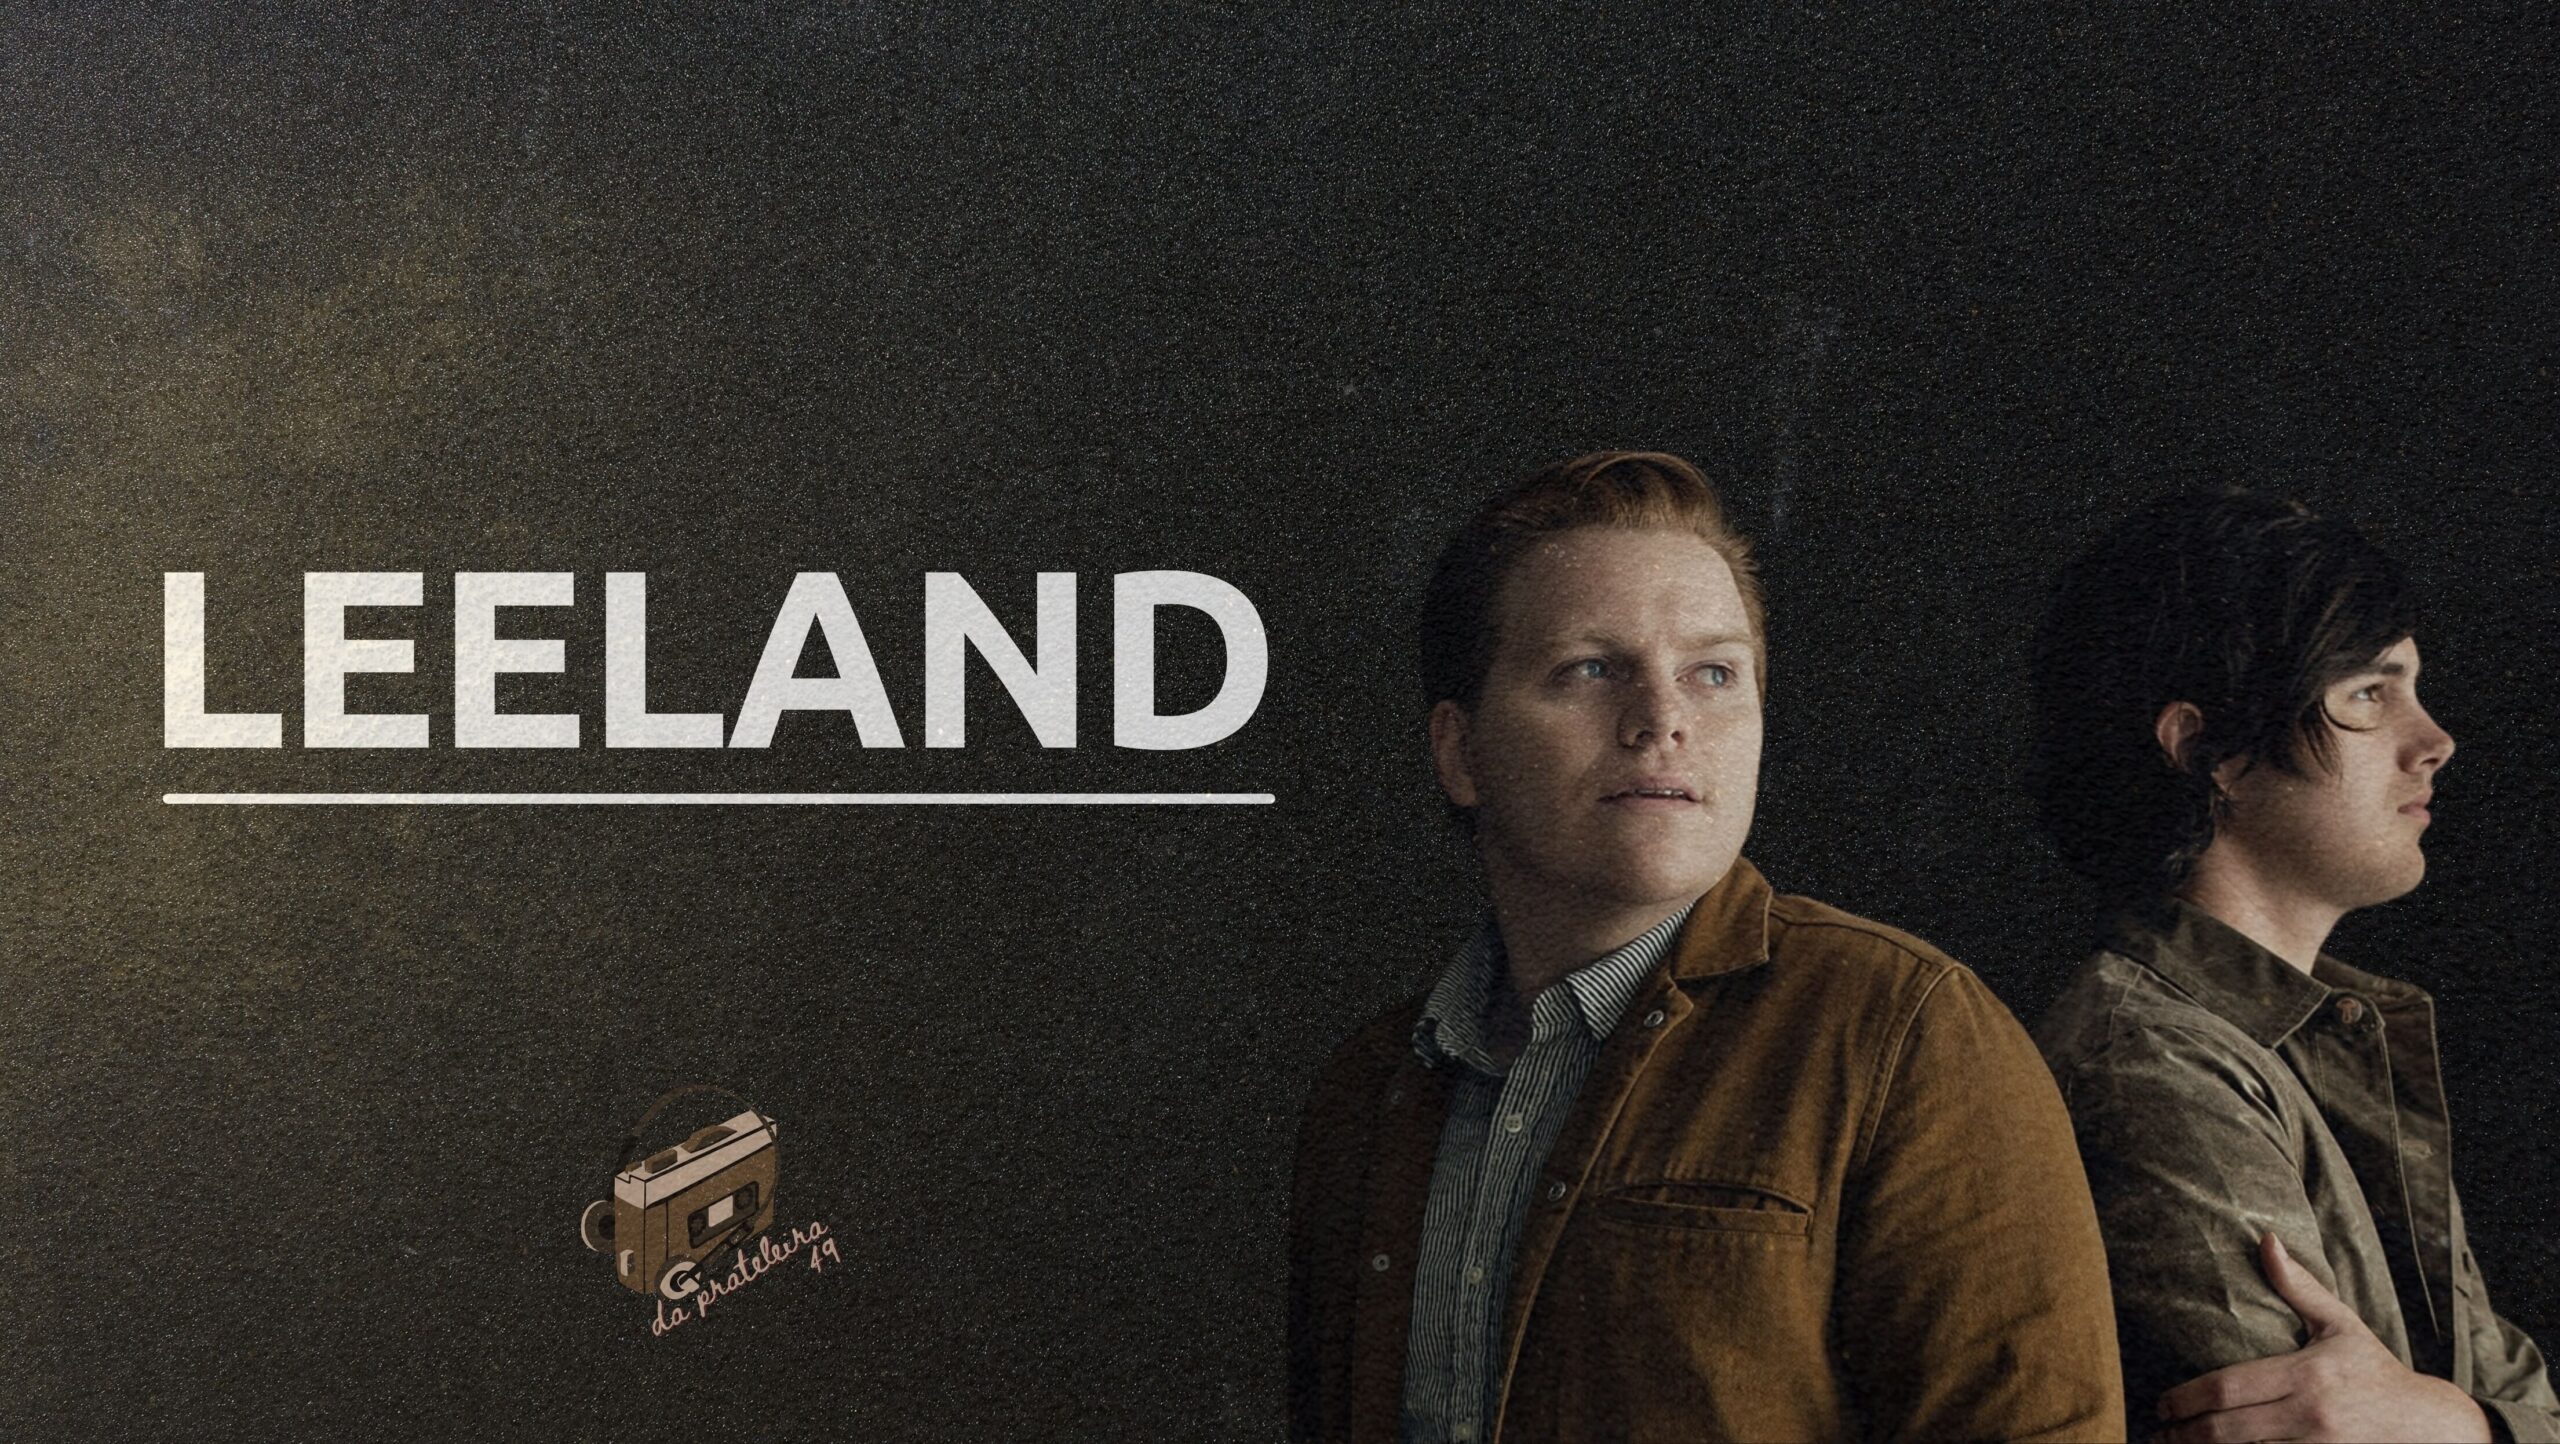 Fundo preto. Na frente o título do episódio, como o nome da banda "Leeland" em branco. Do aldo direito a foto de dois rapazes, membros da banda.